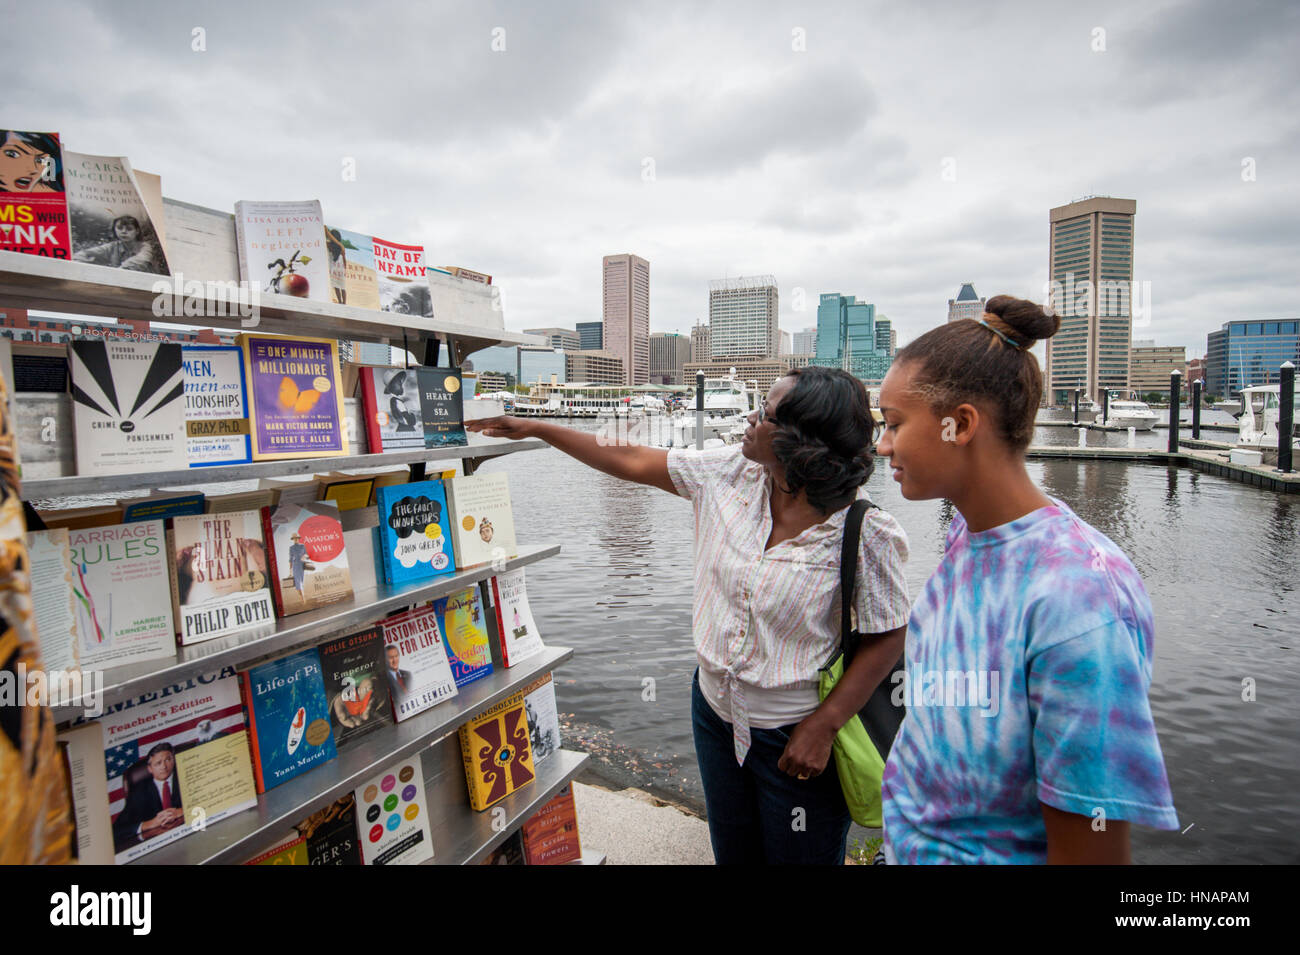 Zwei Frauen stoppen um Bücher auf dem Display des Baltimore-Buch-Festivals am Innenhafen zu betrachten. Stockfoto